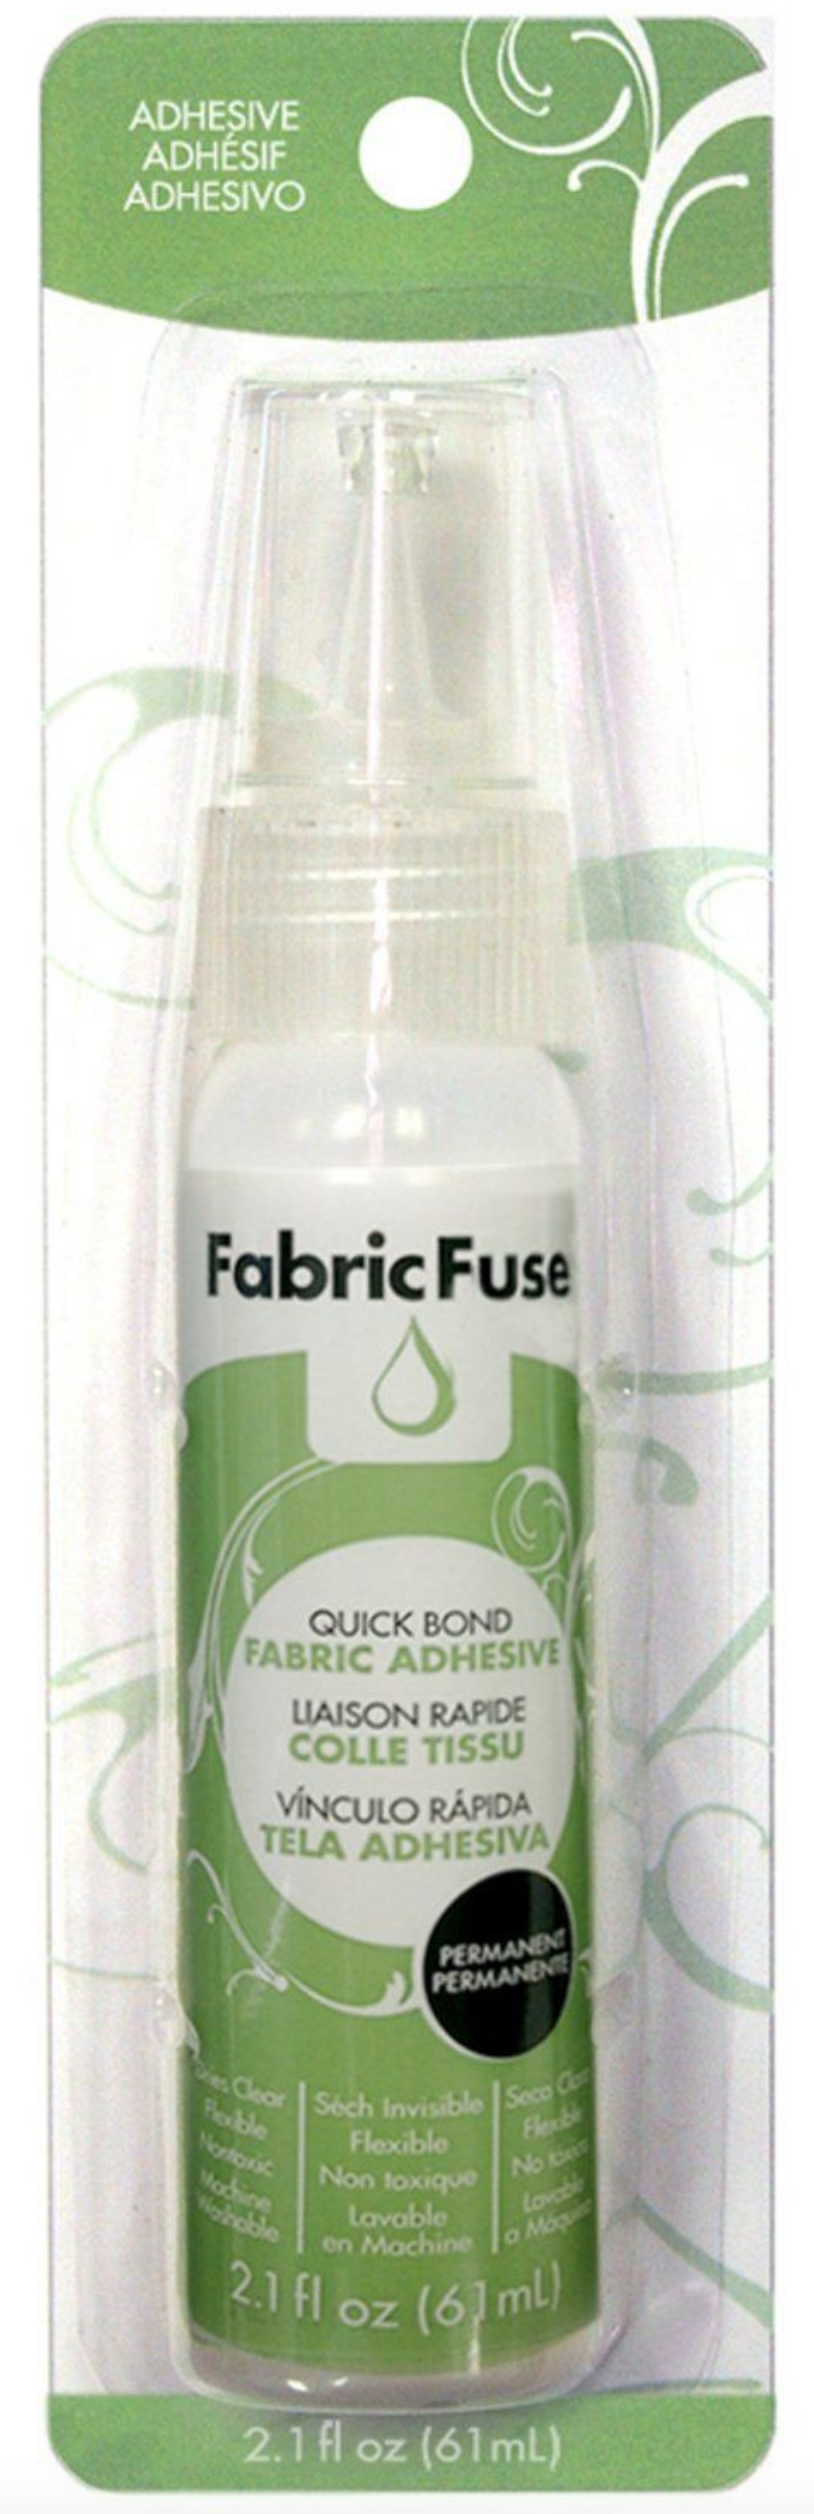 Fabric Fuse Liquid Adhesive - 000943048312